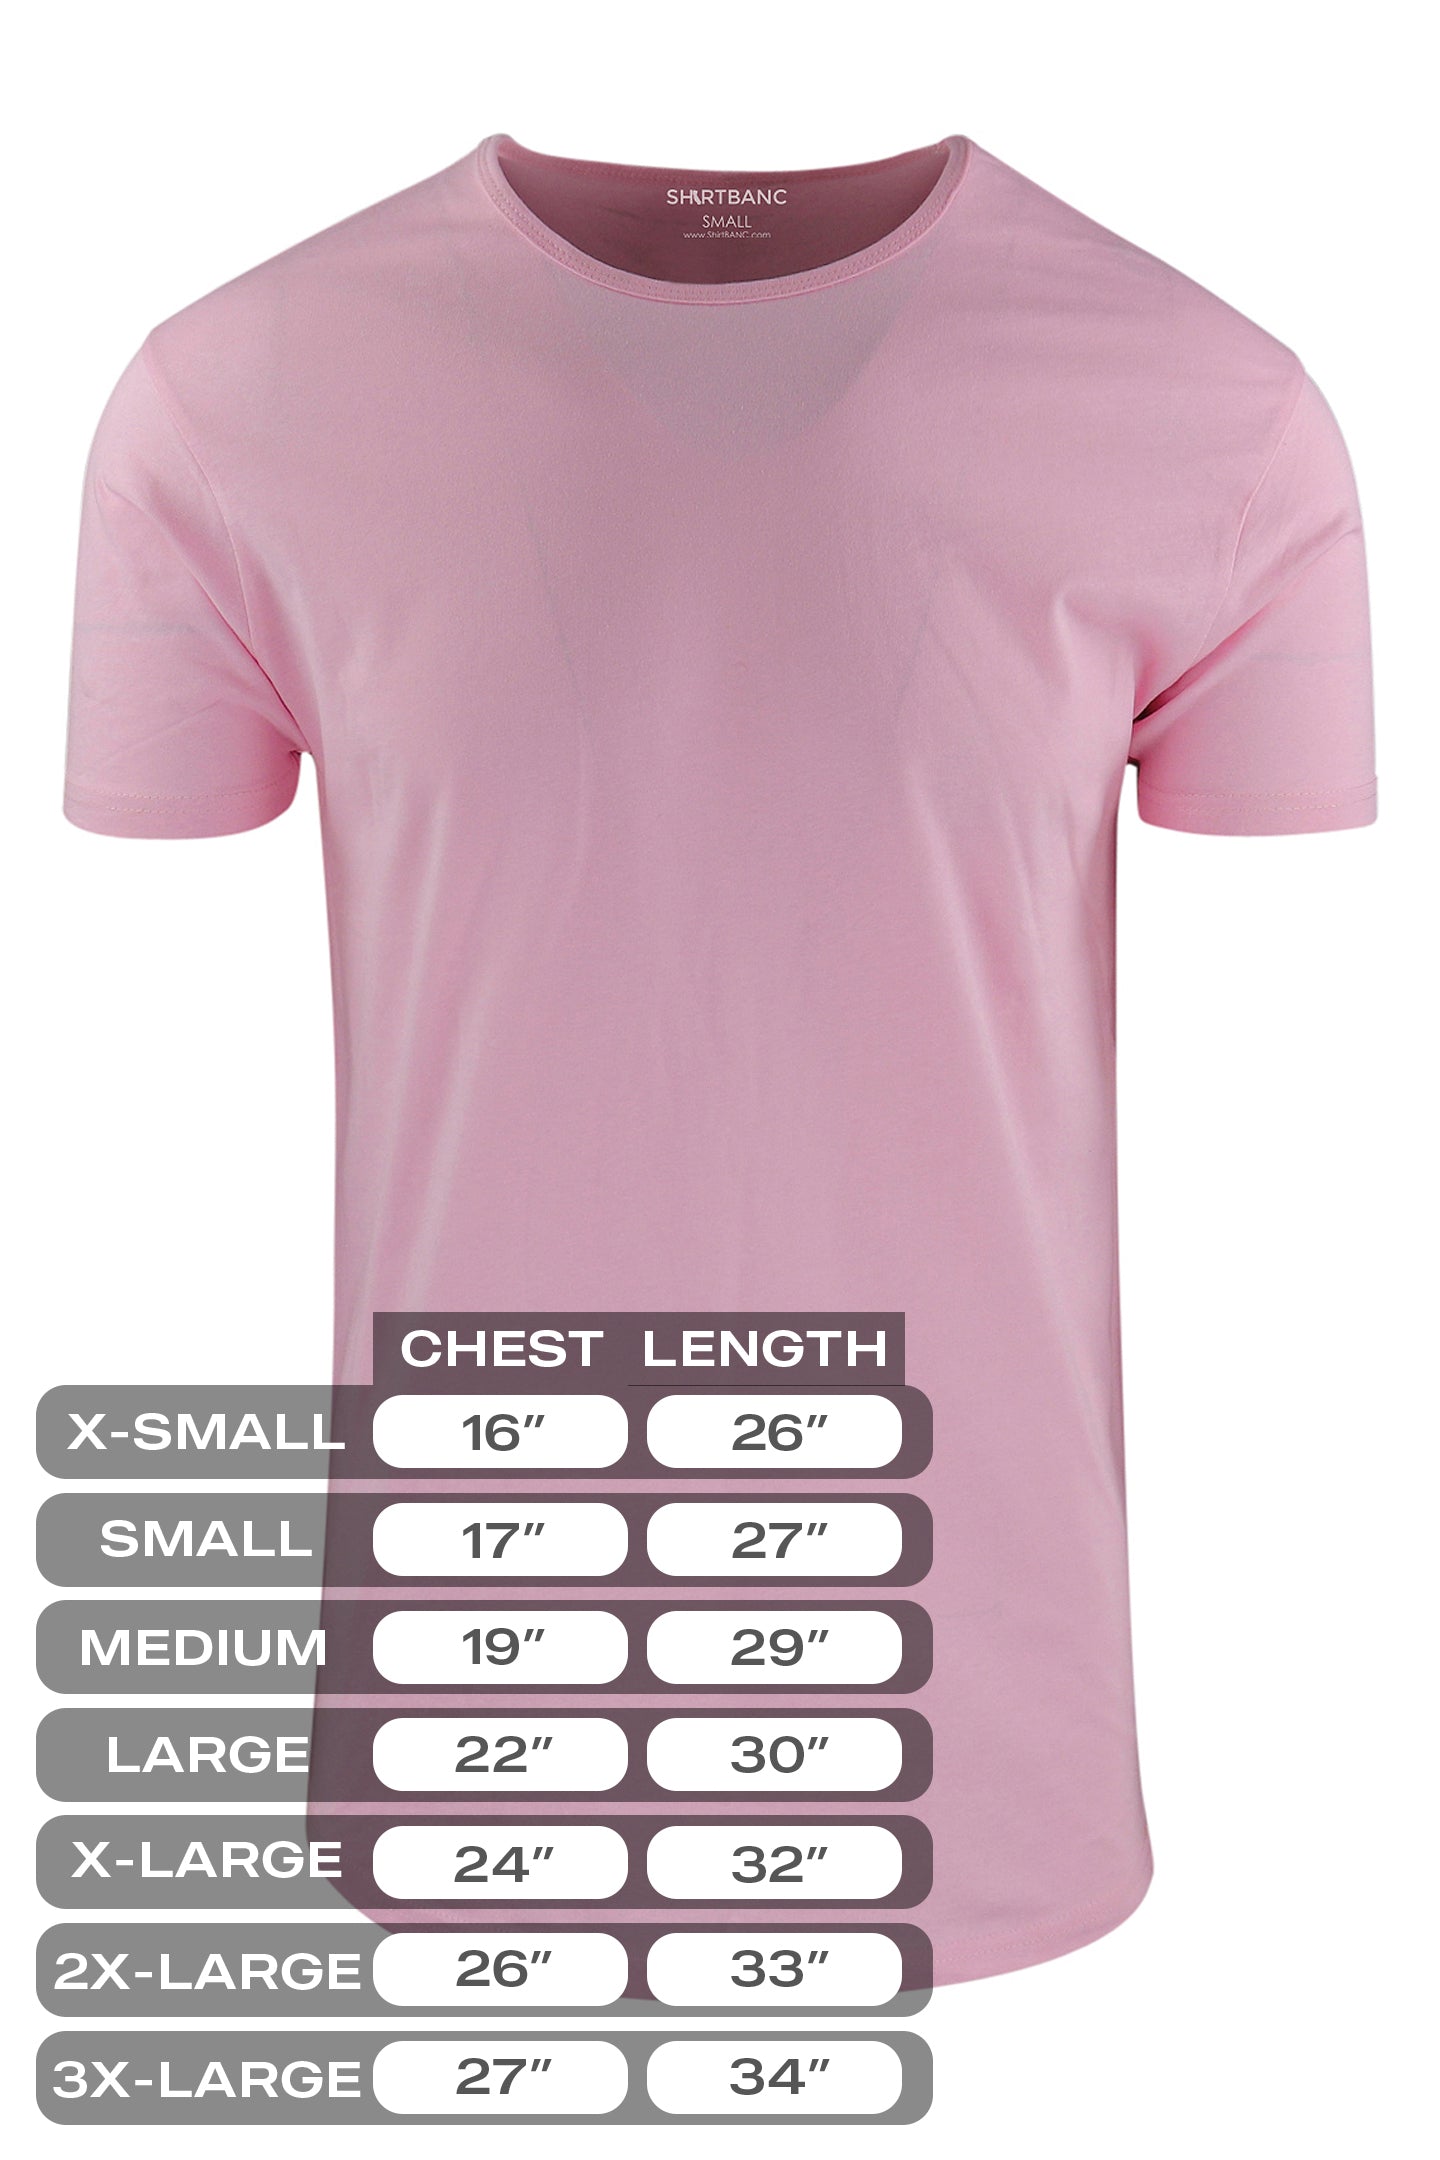 Essential Drop Cut Shirts - Solid Colors